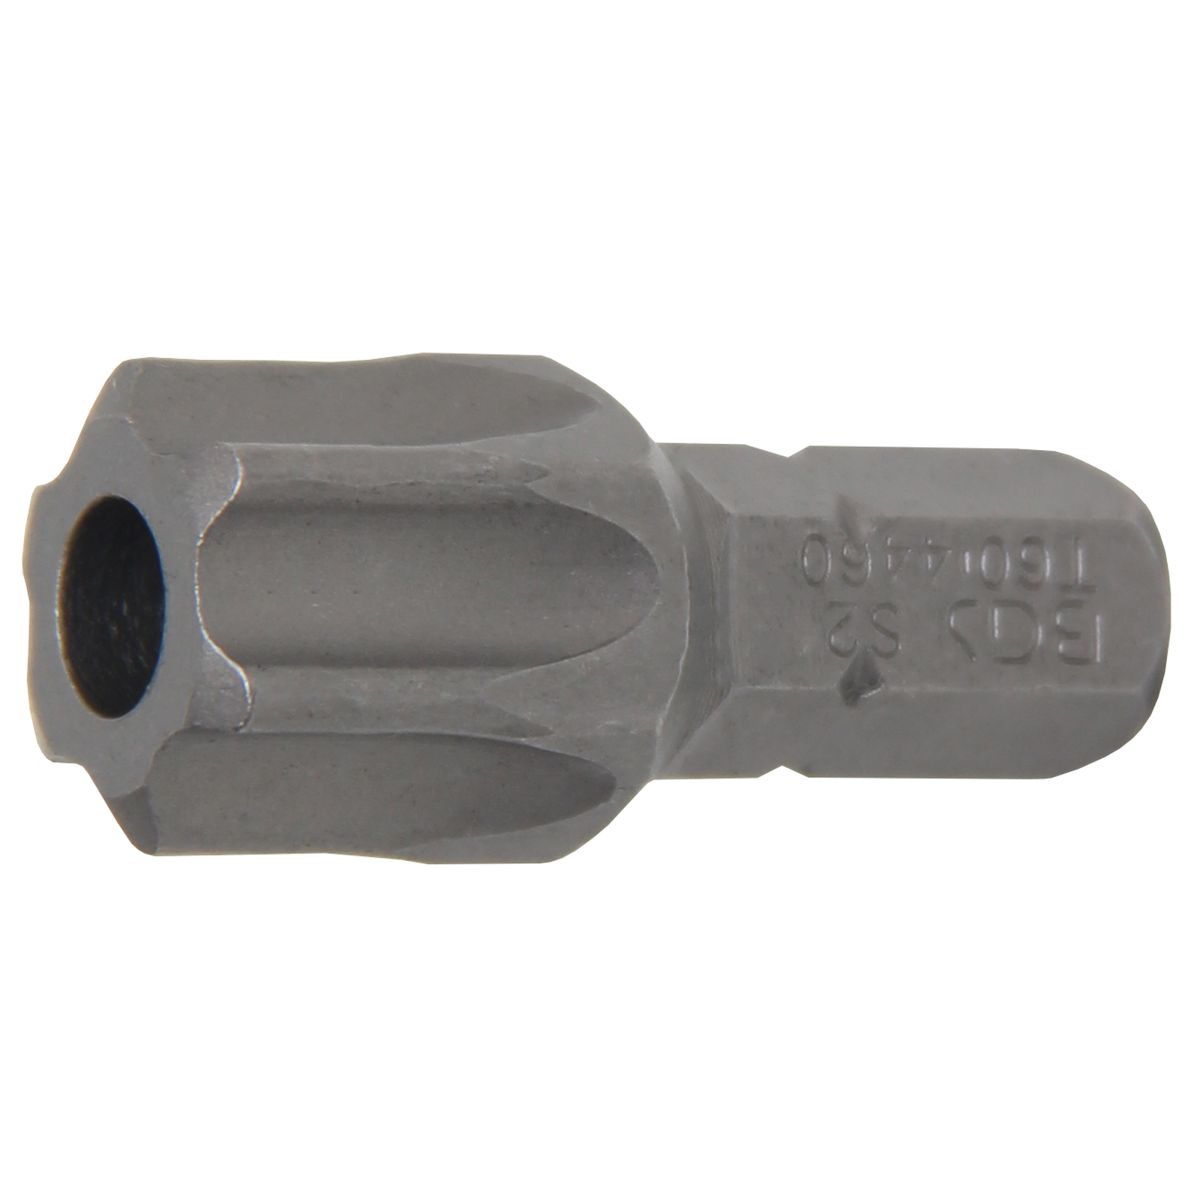 Punta | longitud 30 mm | entrada 8 mm (5/16") | perfil en T (para Torx) con perforación T60